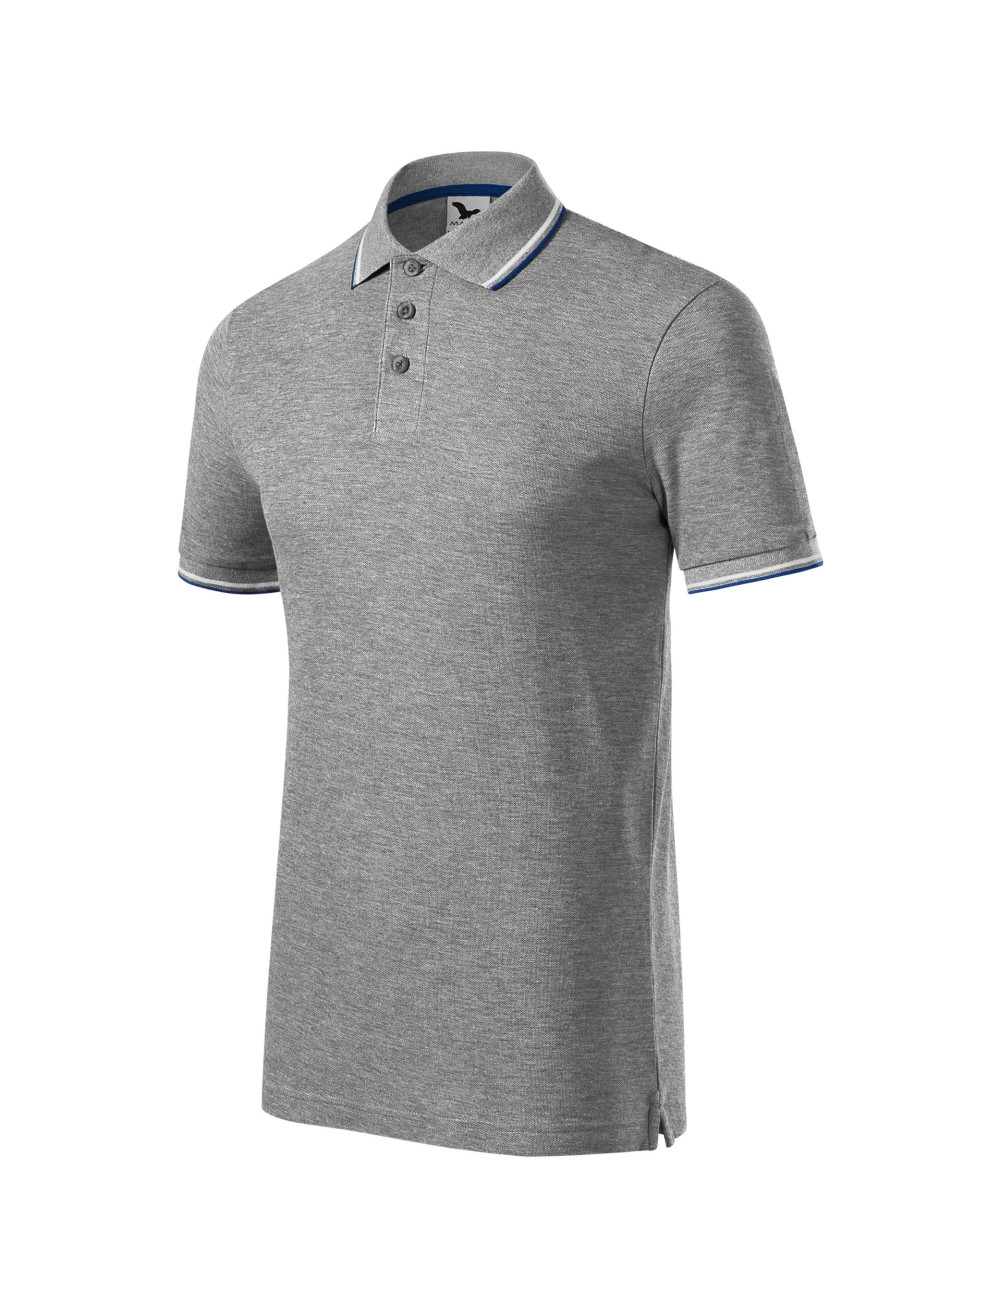 Men`s polo shirt focus 232 dark gray melange Adler Malfini®